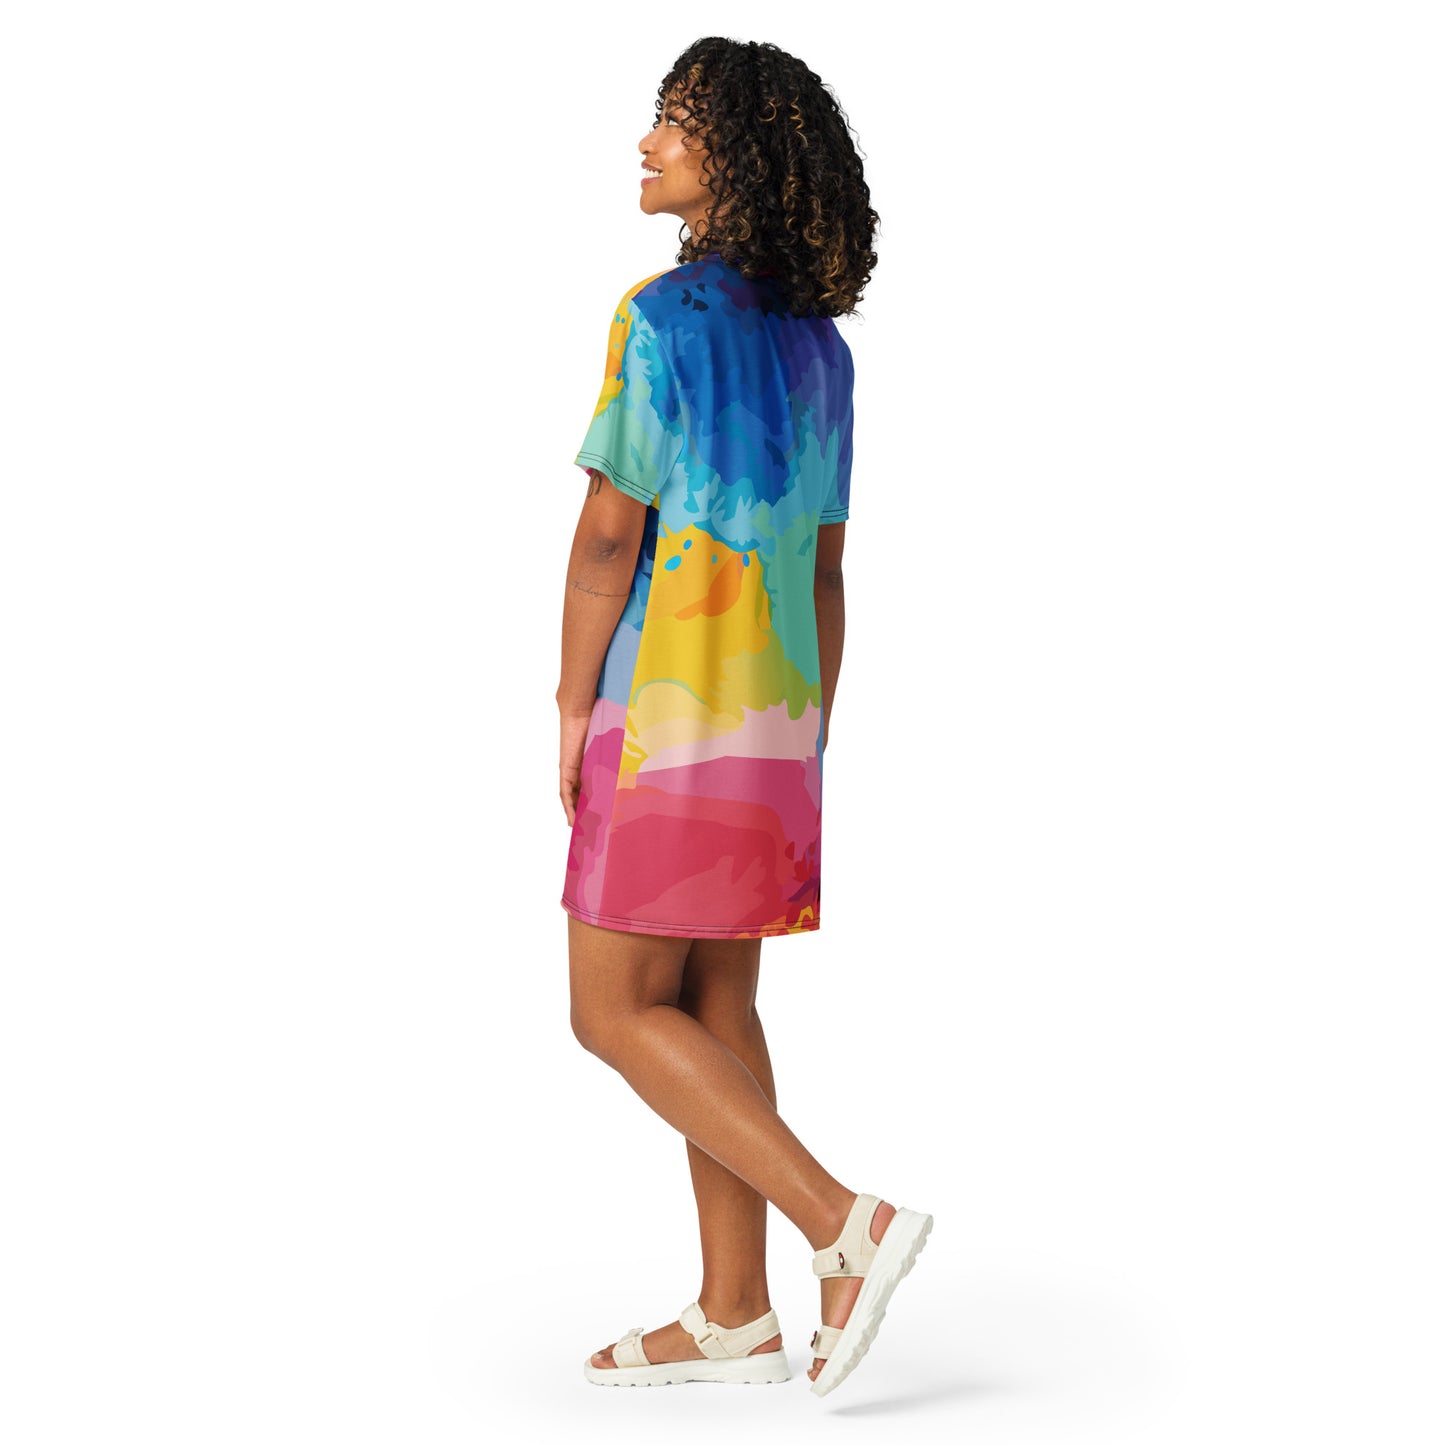 Color Clouds T-shirt Dress